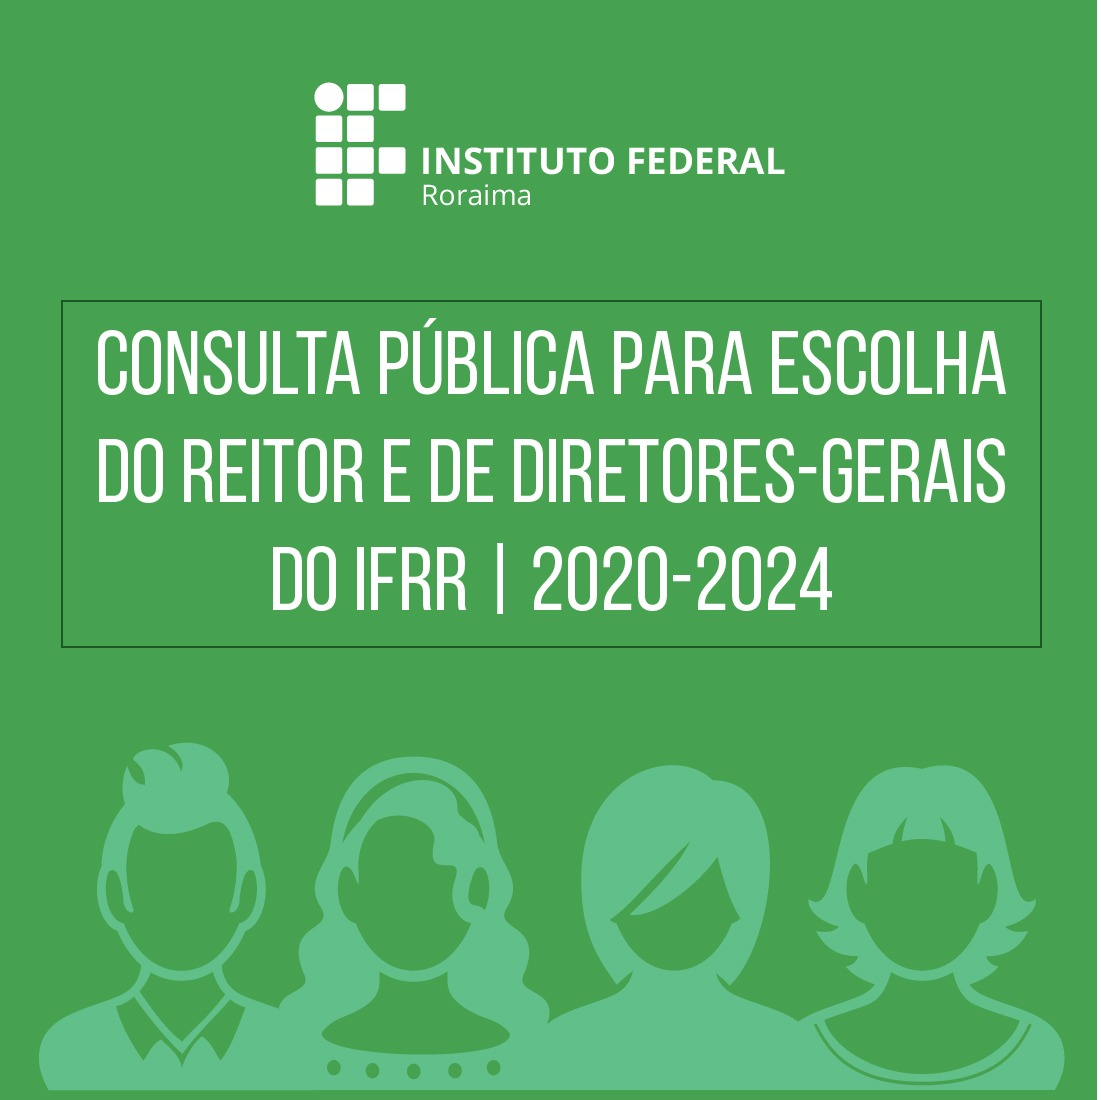 Publicada resolução que deflagra consulta pública para escolha de reitor e diretores-gerais do IFRR